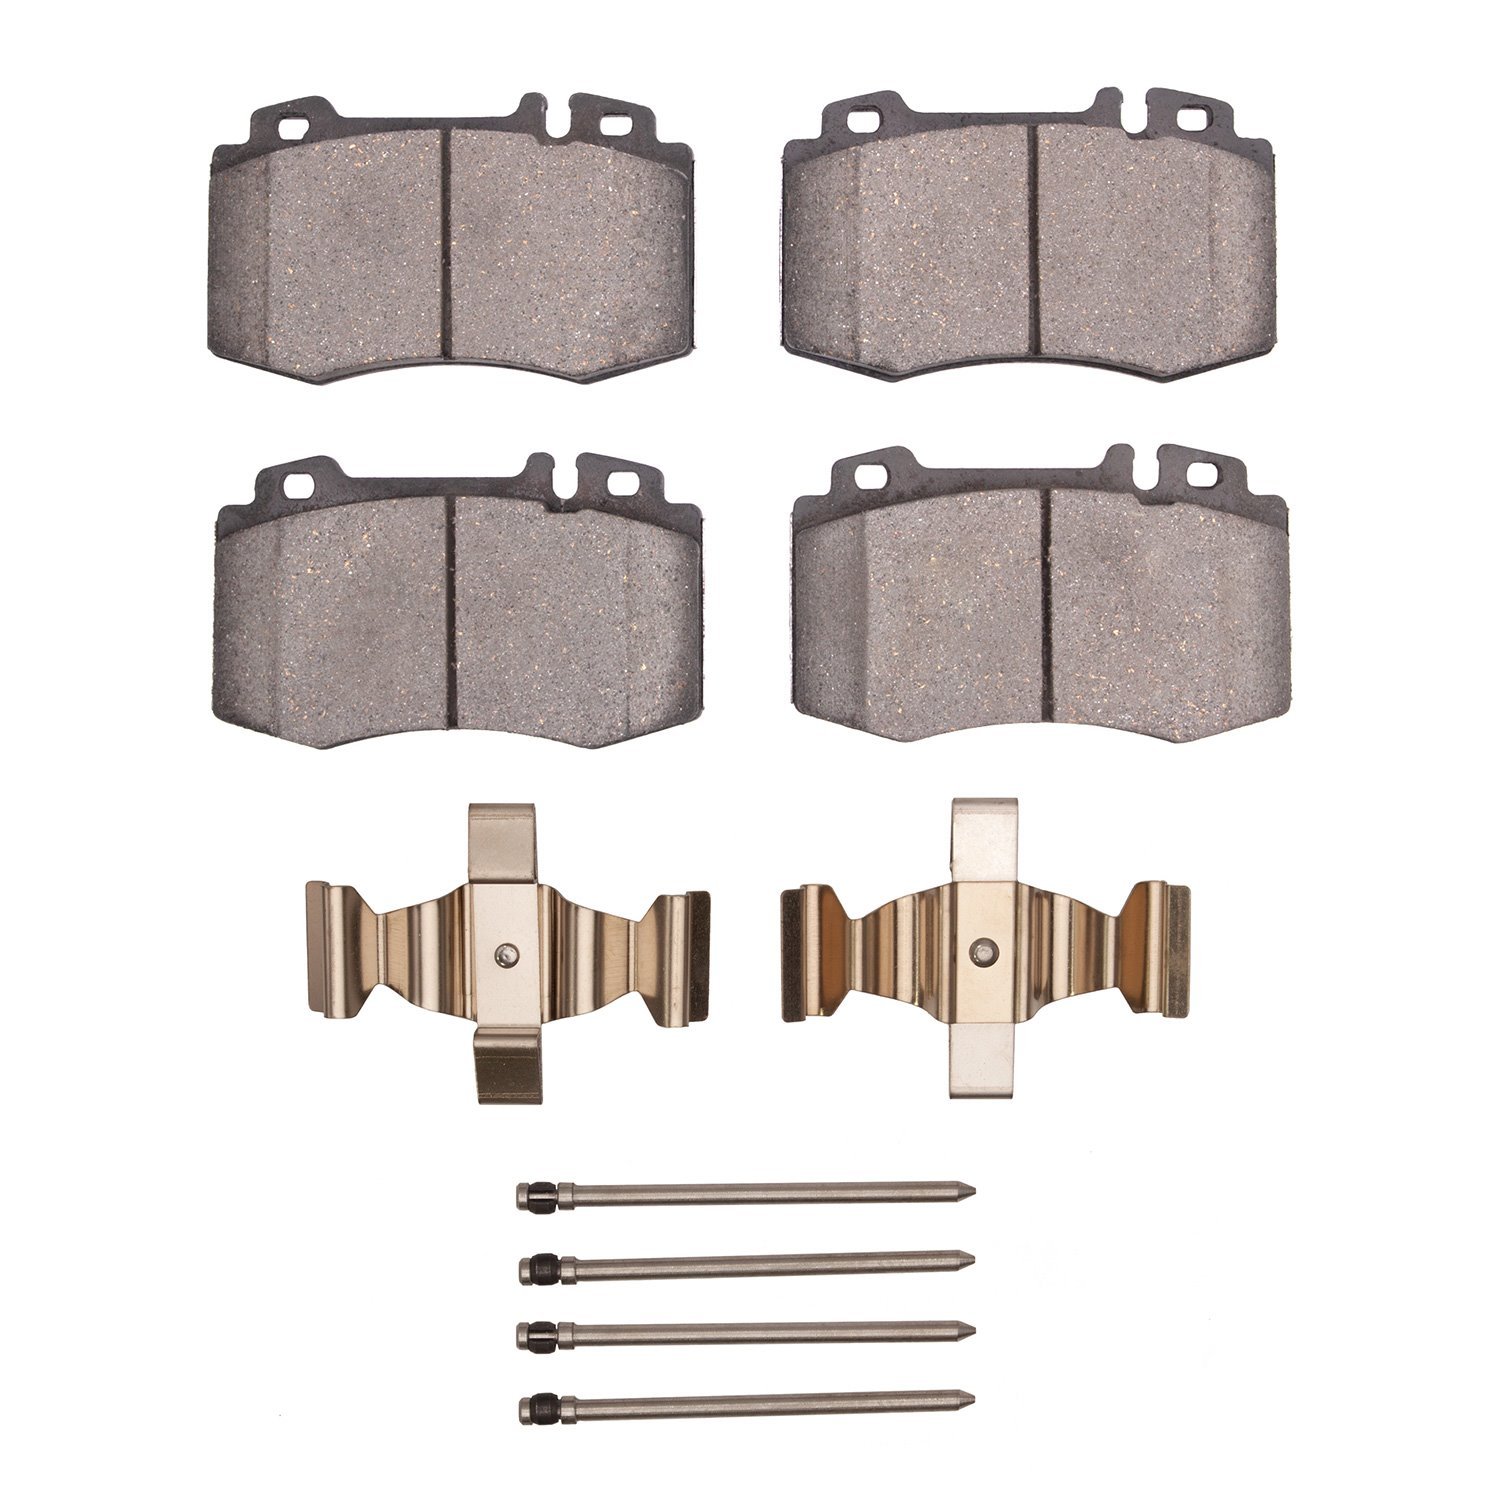 5000 Euro Ceramic Brake Pads & Hardware Kit,